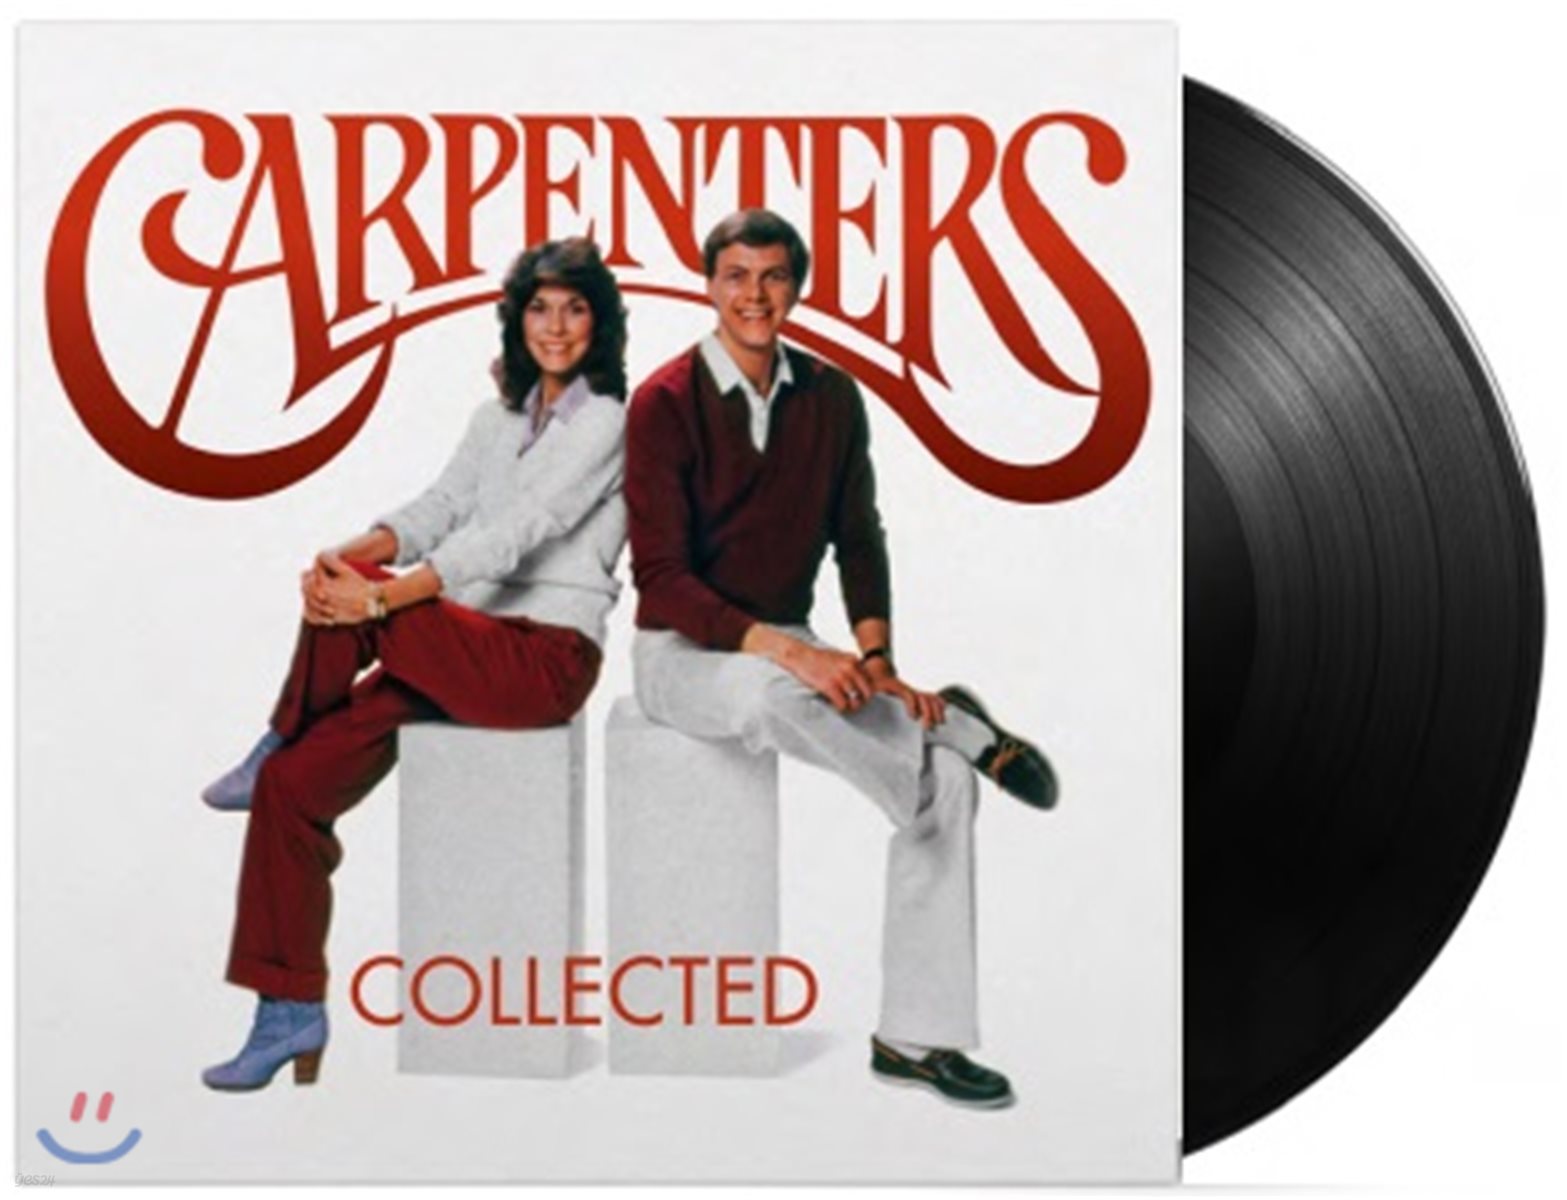 Carpenters (카펜터스) - Carpenters Collected [2 LP]